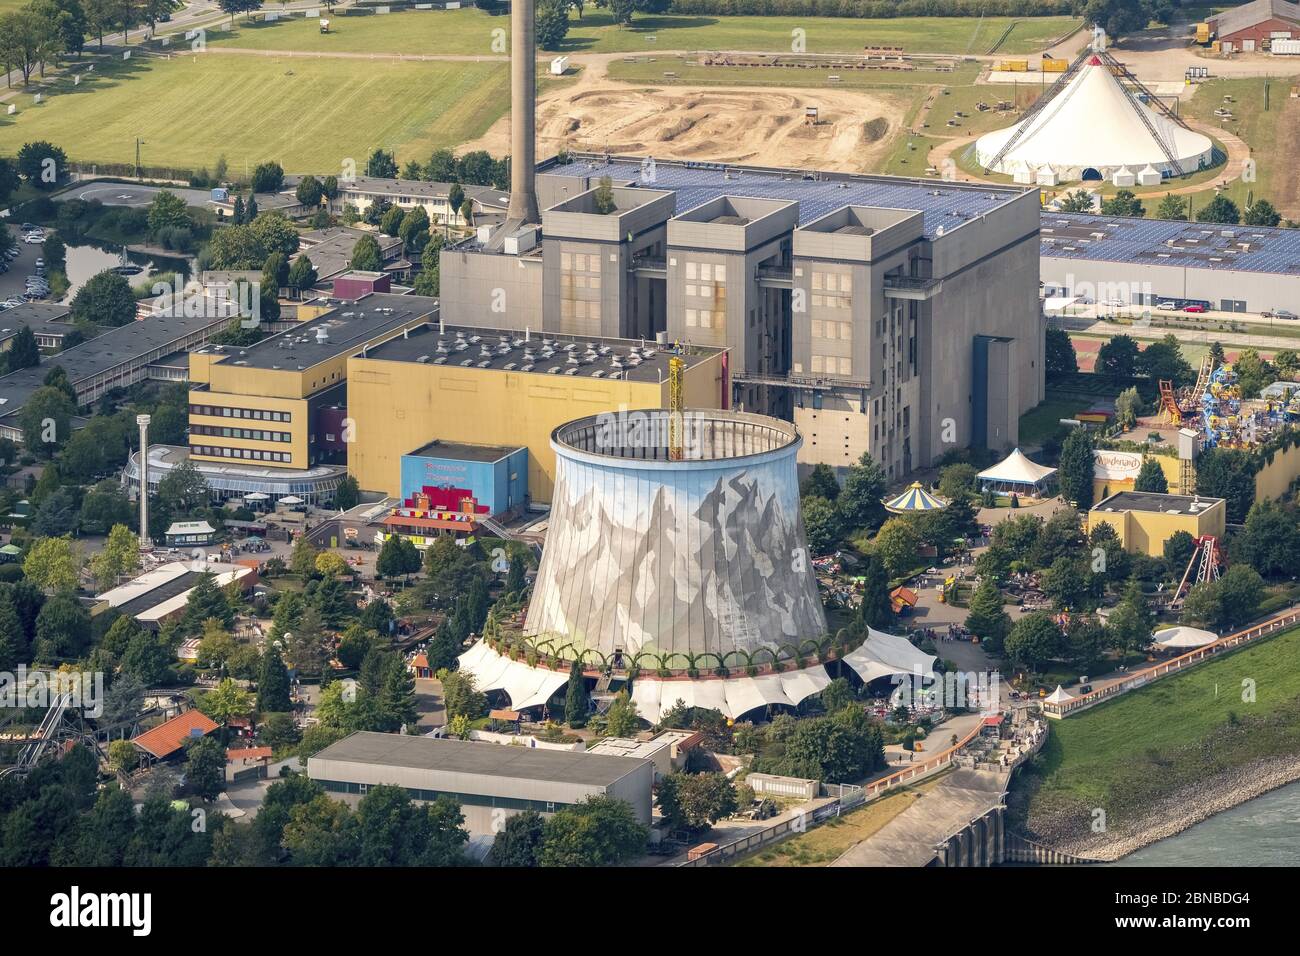 , site de Kundar du pays de l'Ouest sur l'ancienne zone de centrale nucléaire Kalkar, 03.09.2017, vue aérienne, Allemagne, Rhénanie-du-Nord-Westphalie, Kalkar Banque D'Images